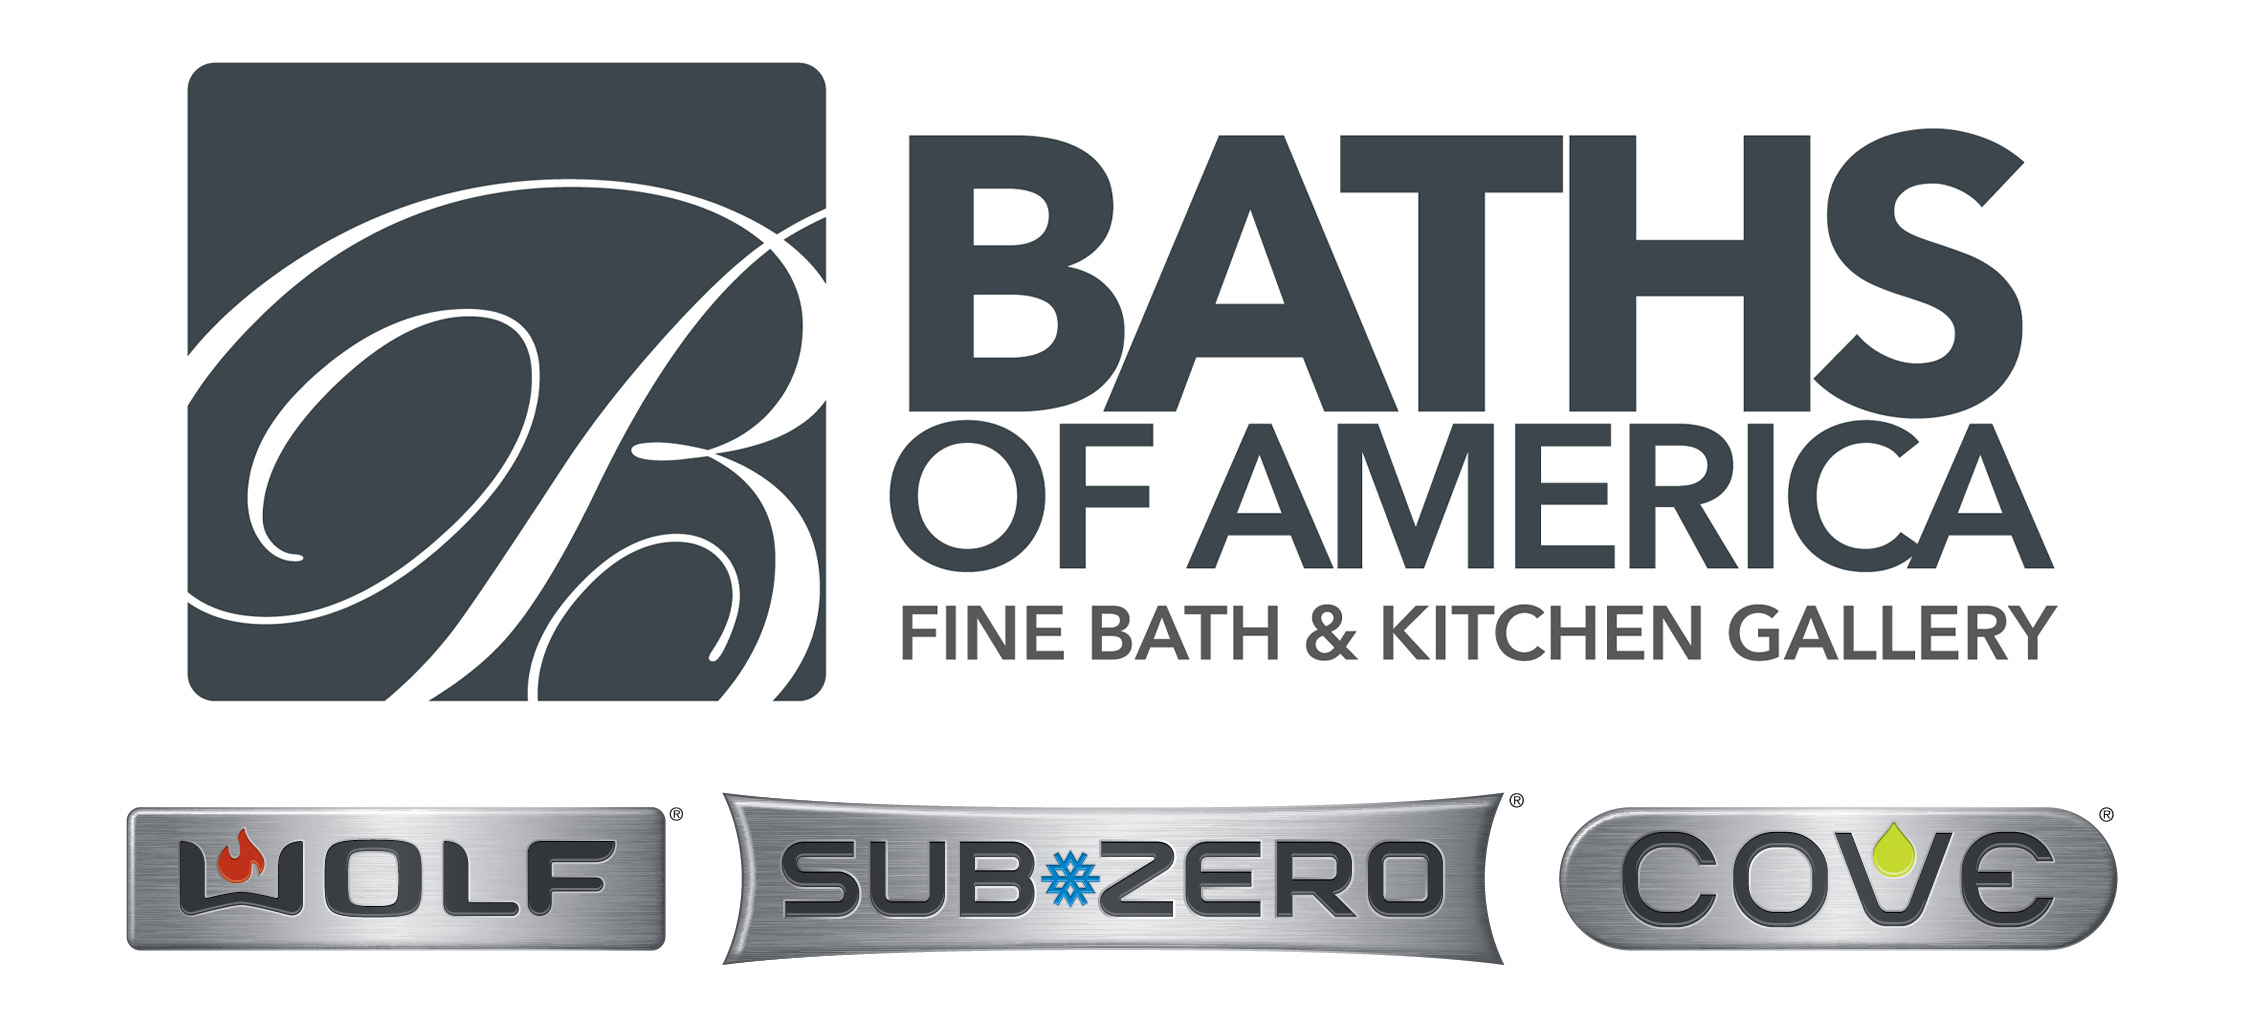 Baths of America